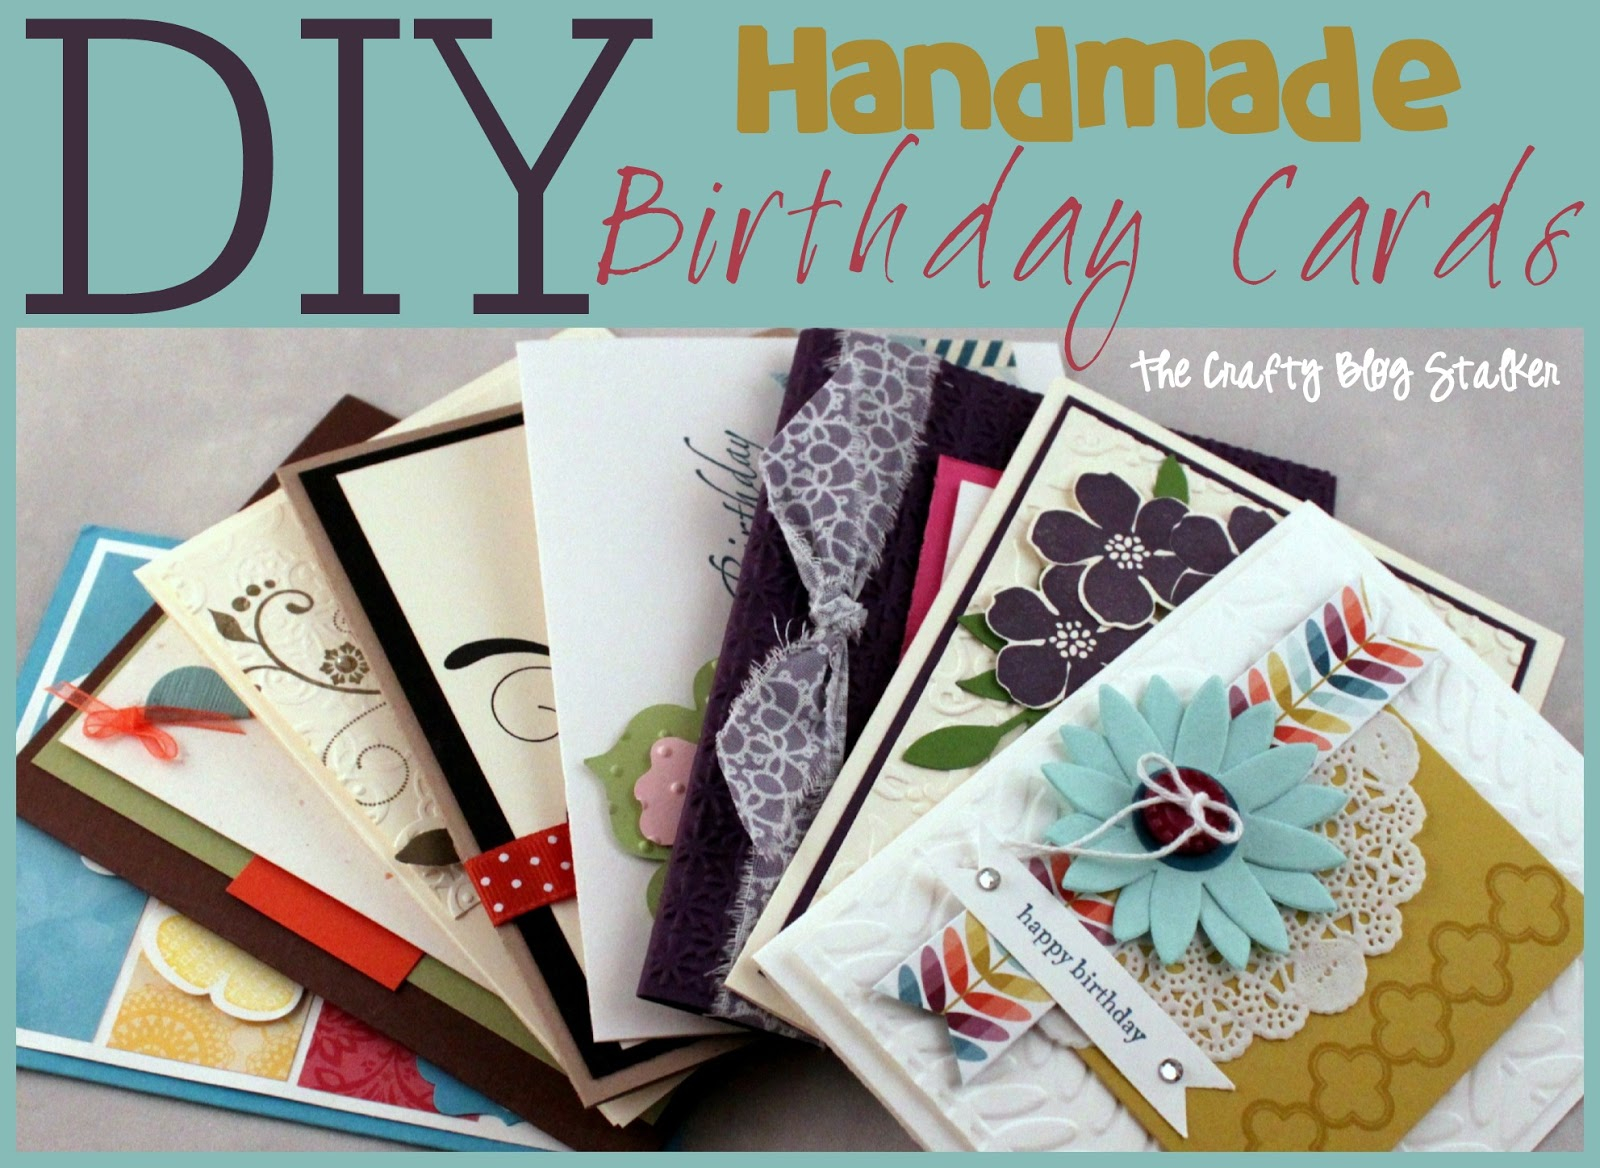 Good Ideas For A Homemade Birthday Card Handmade Birthday Card Ideas The Crafty Blog Stalker